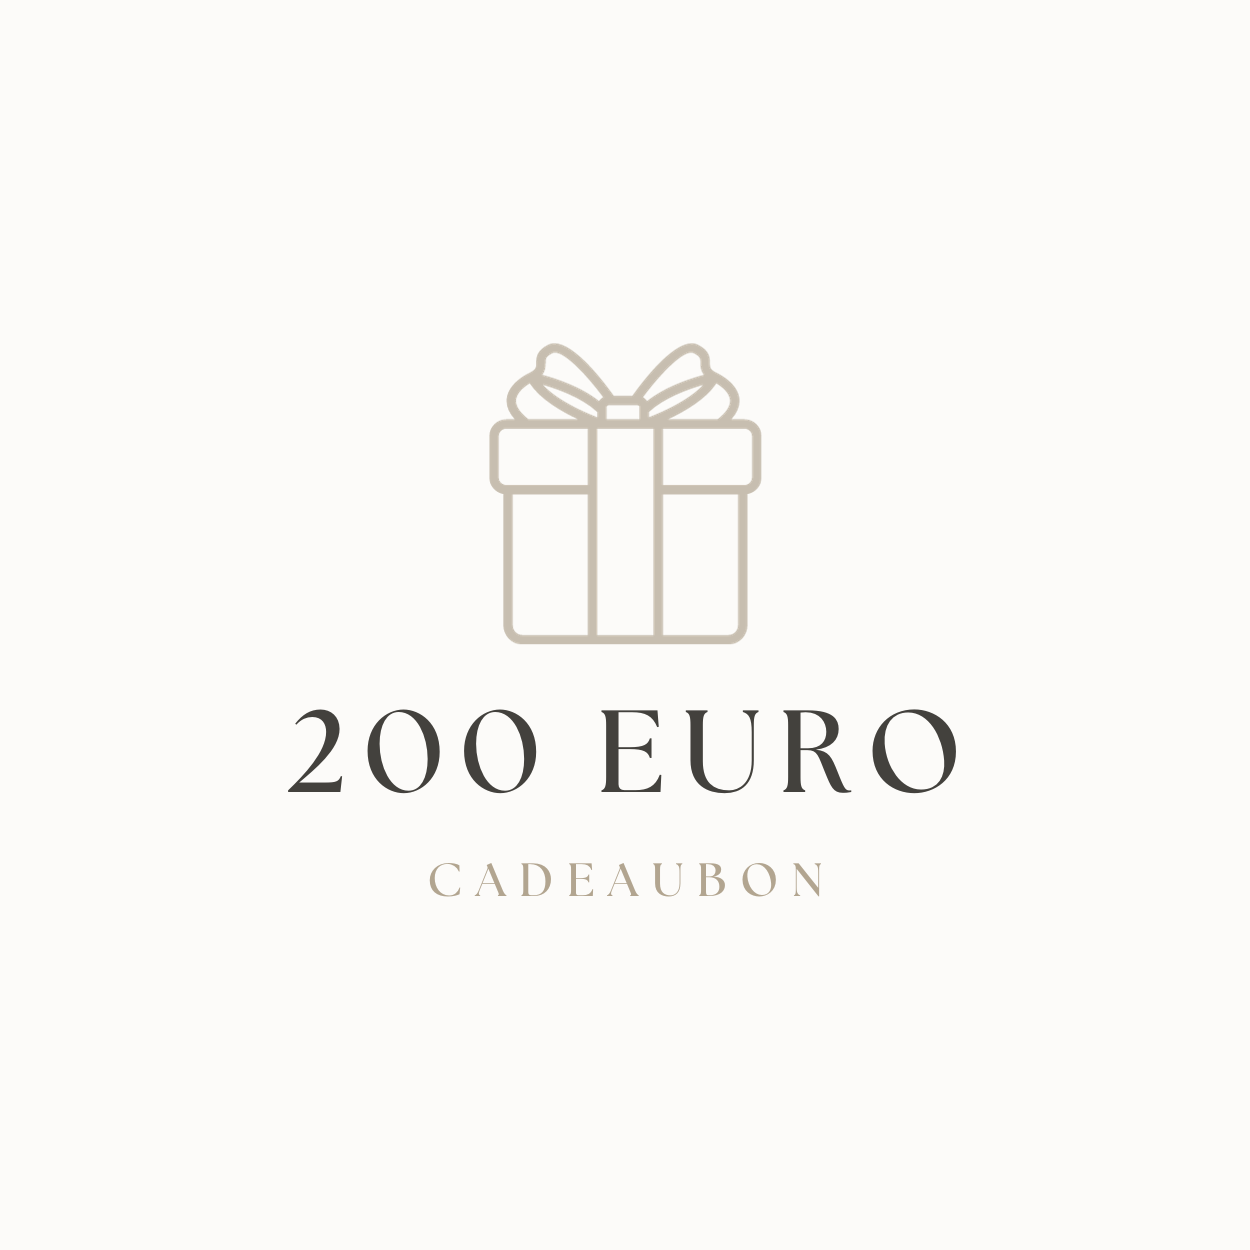 Chèque cadeau | 200 euros